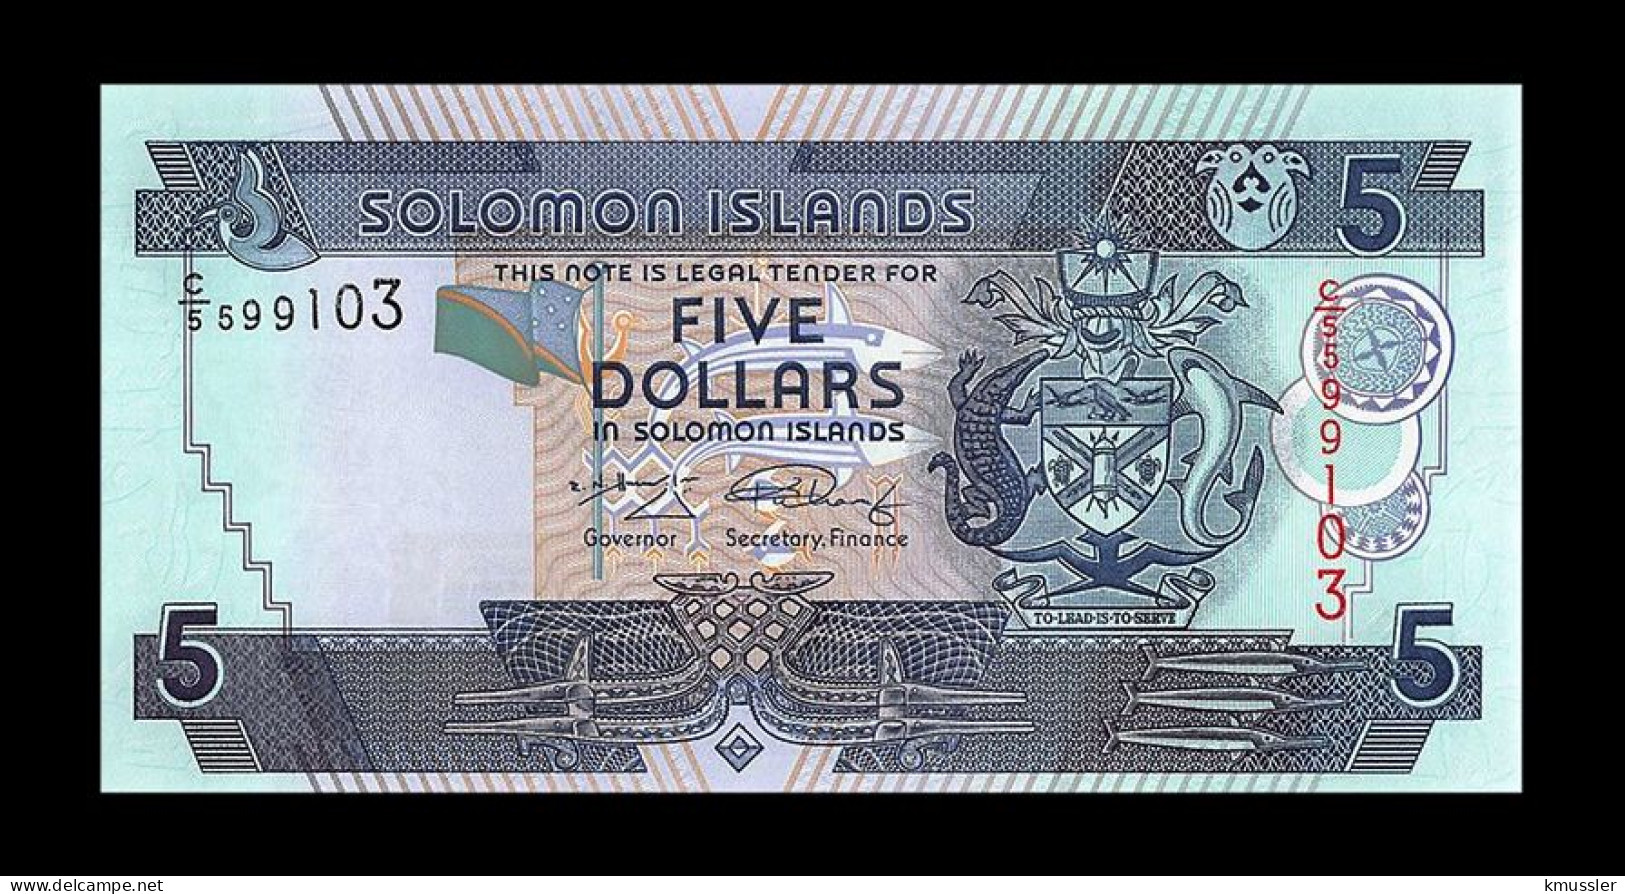 # # # Banknote Von Den Solomon-Inseln 5 Dollars UNC # # # - Salomons